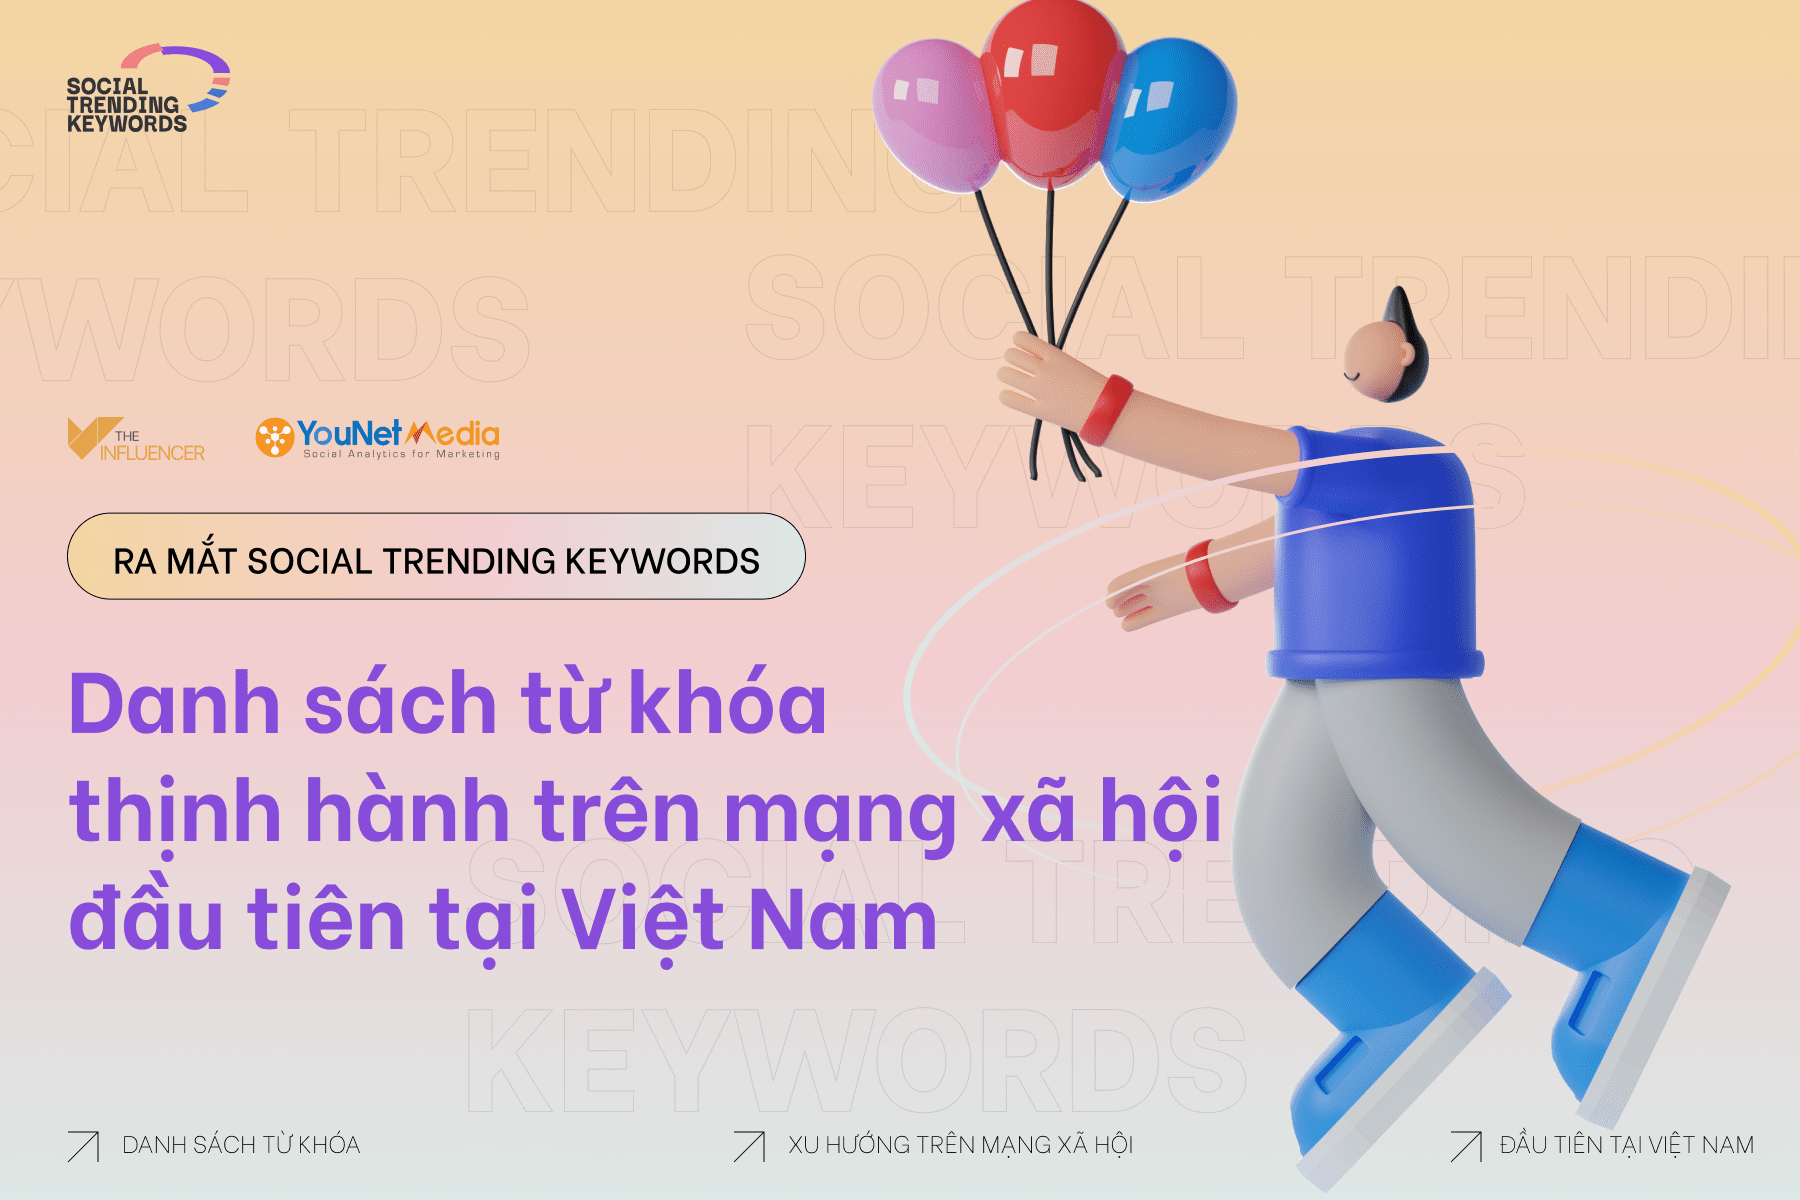 The Influencer cùng YouNet Media ra mắt Social Trending Keywords - Danh sách từ khóa thịnh hành trên mạng xã hội đầu tiên tại Việt Nam